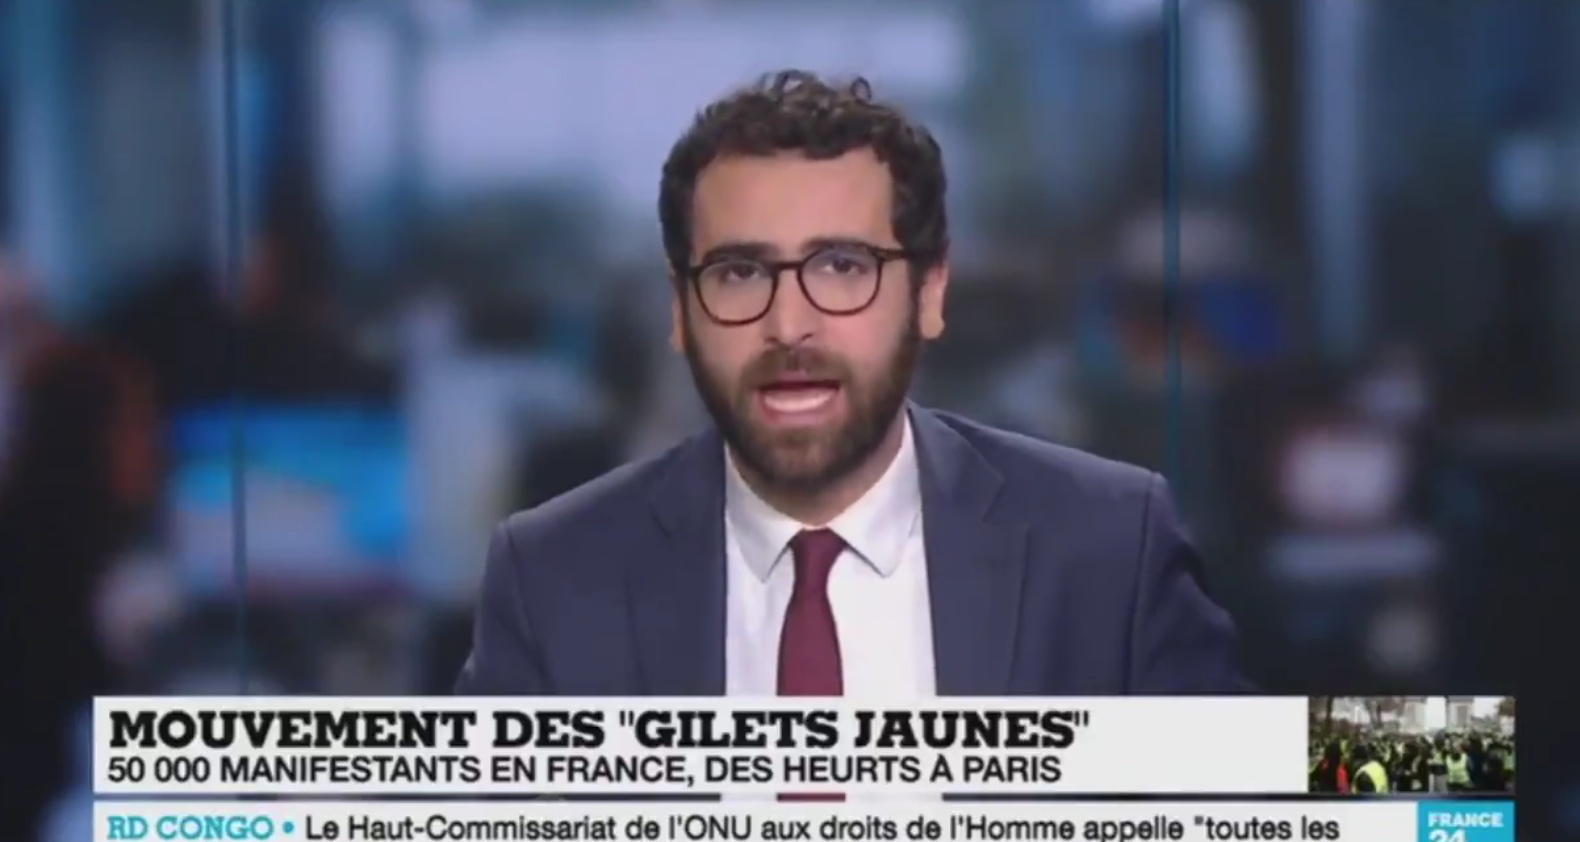 Les journalistes de France 24 cherchent à tromper les téléspectateurs (VIDÉO)